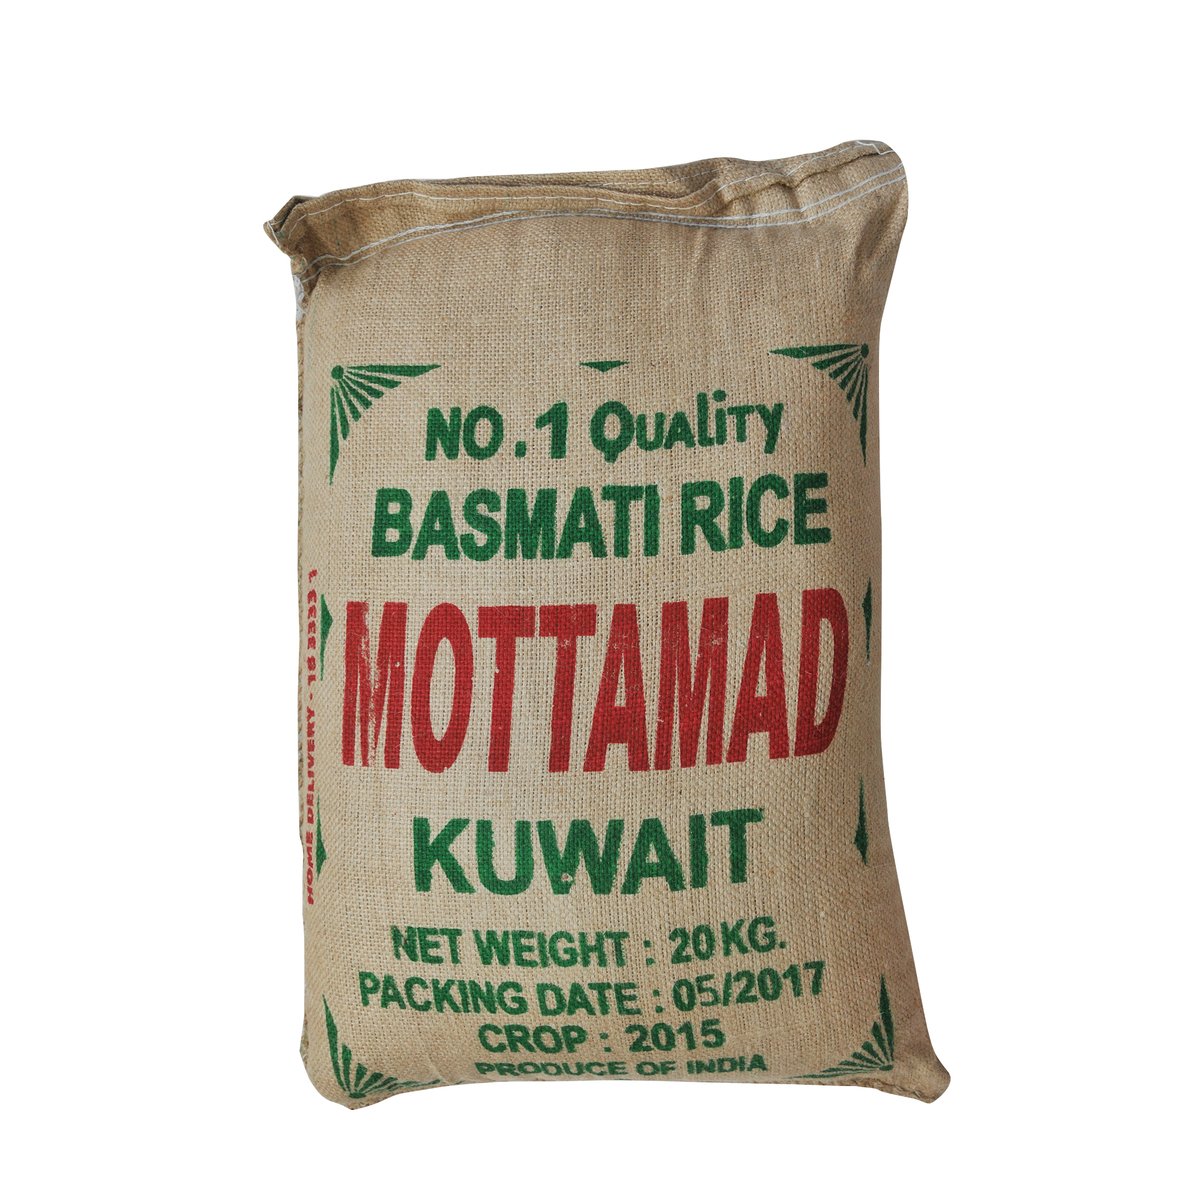 Mottamad Basmati Rice 20kg